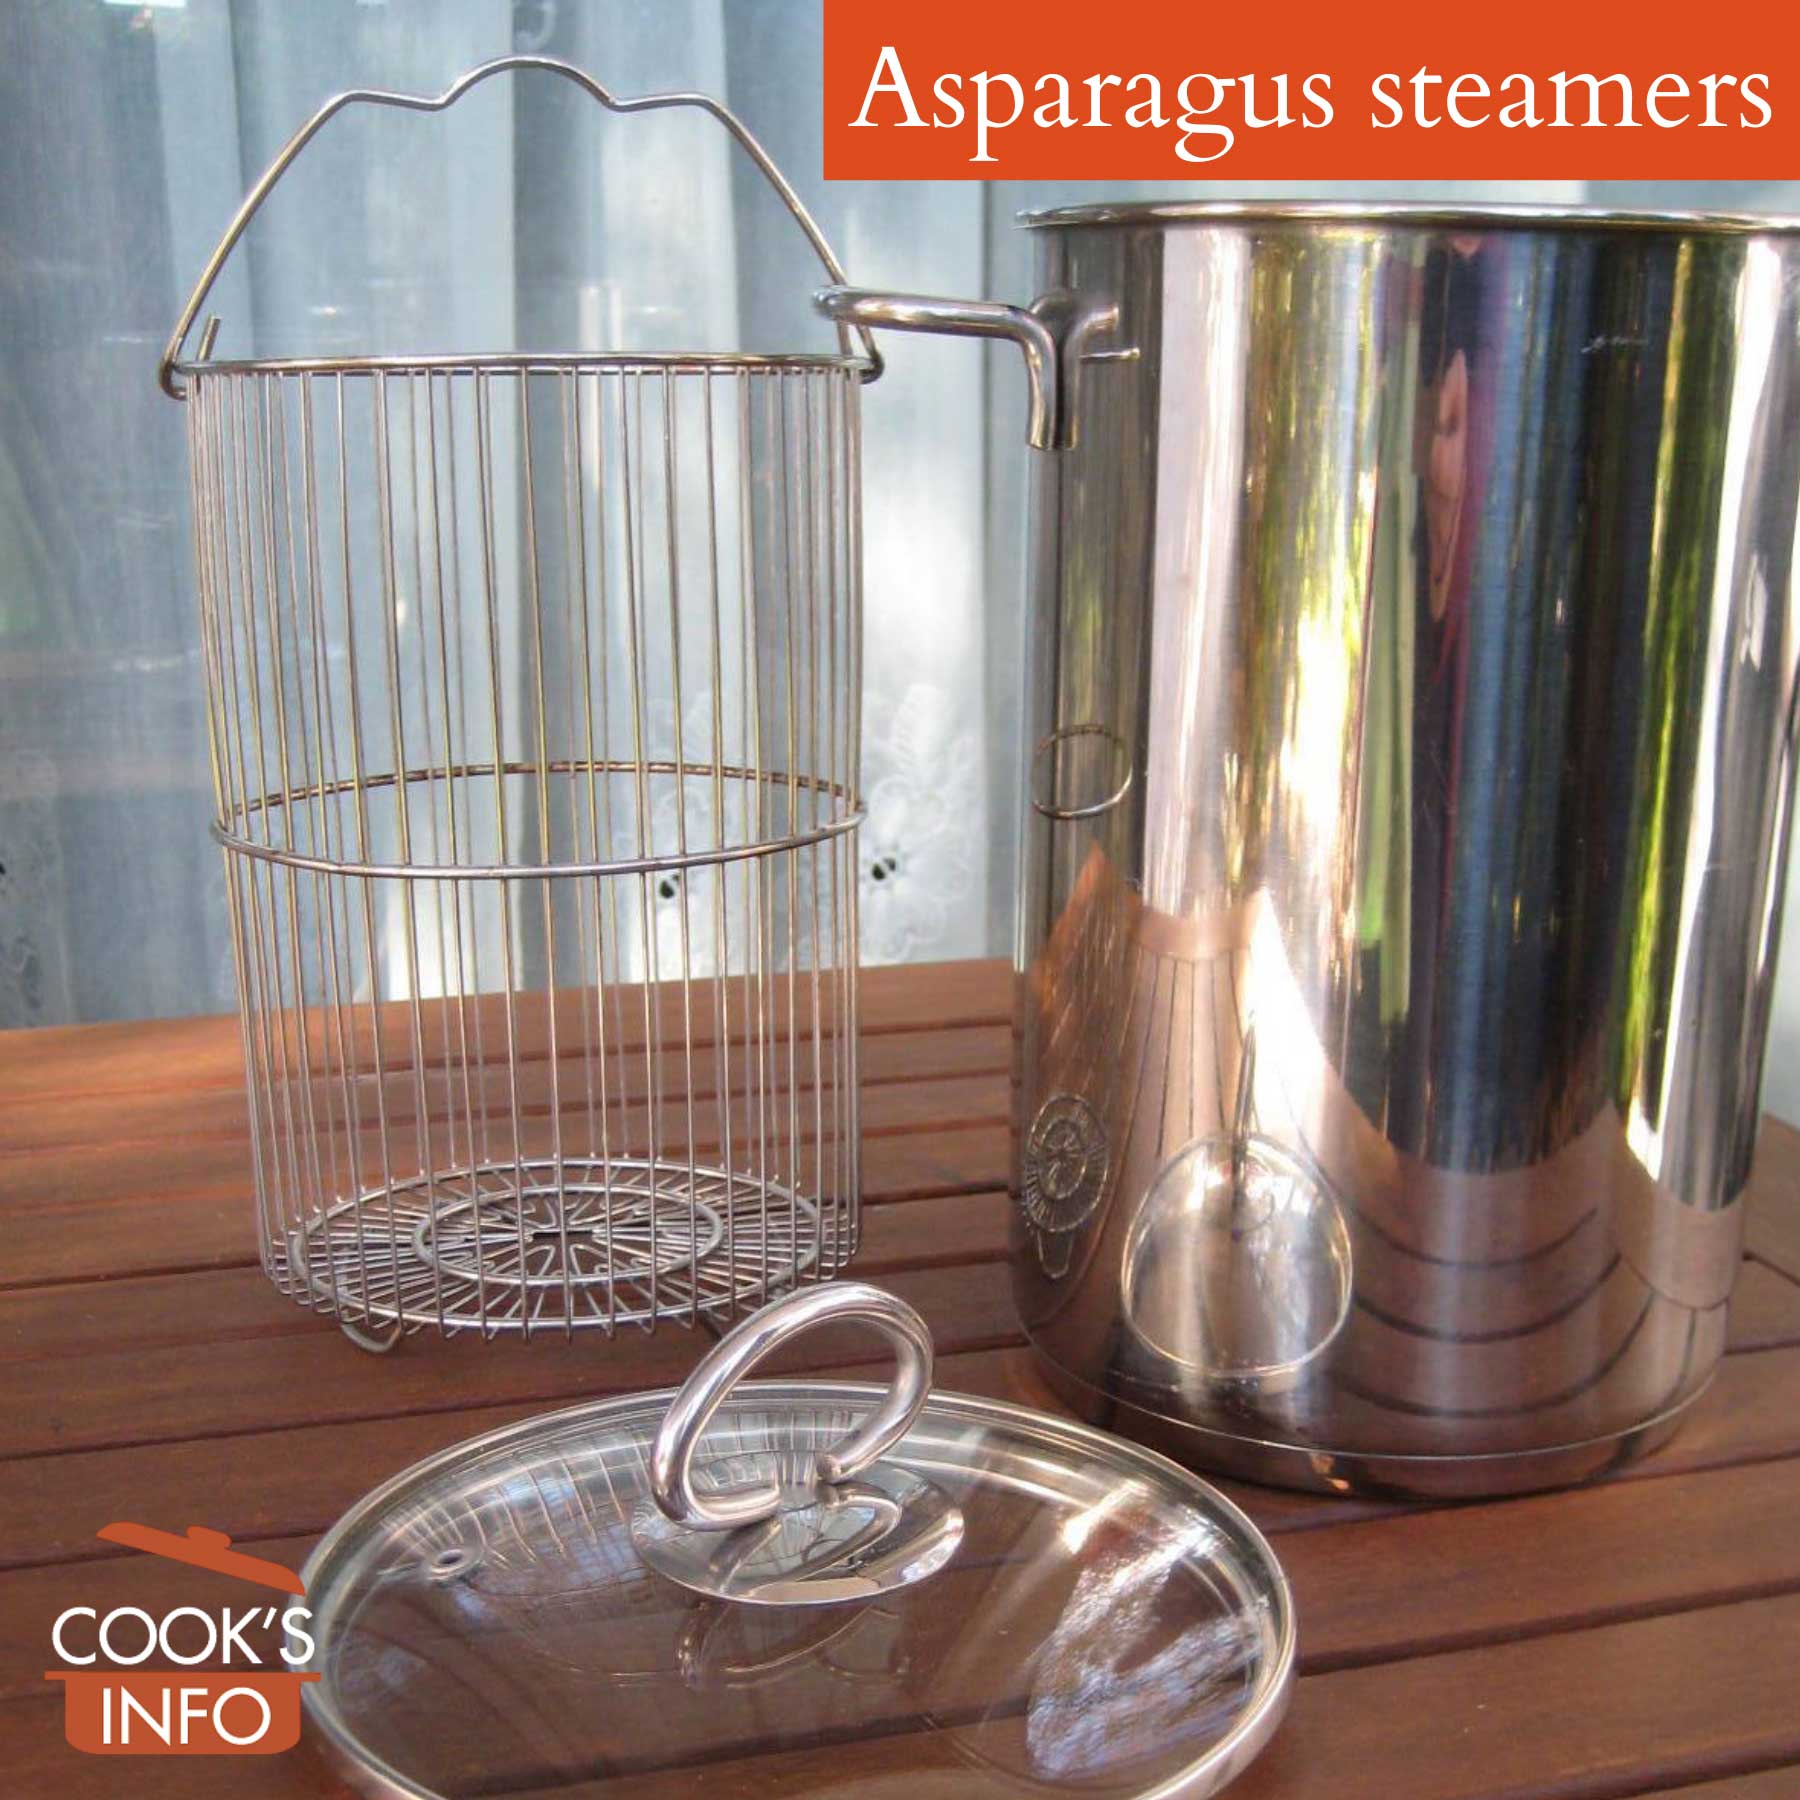 Asparagus steamer